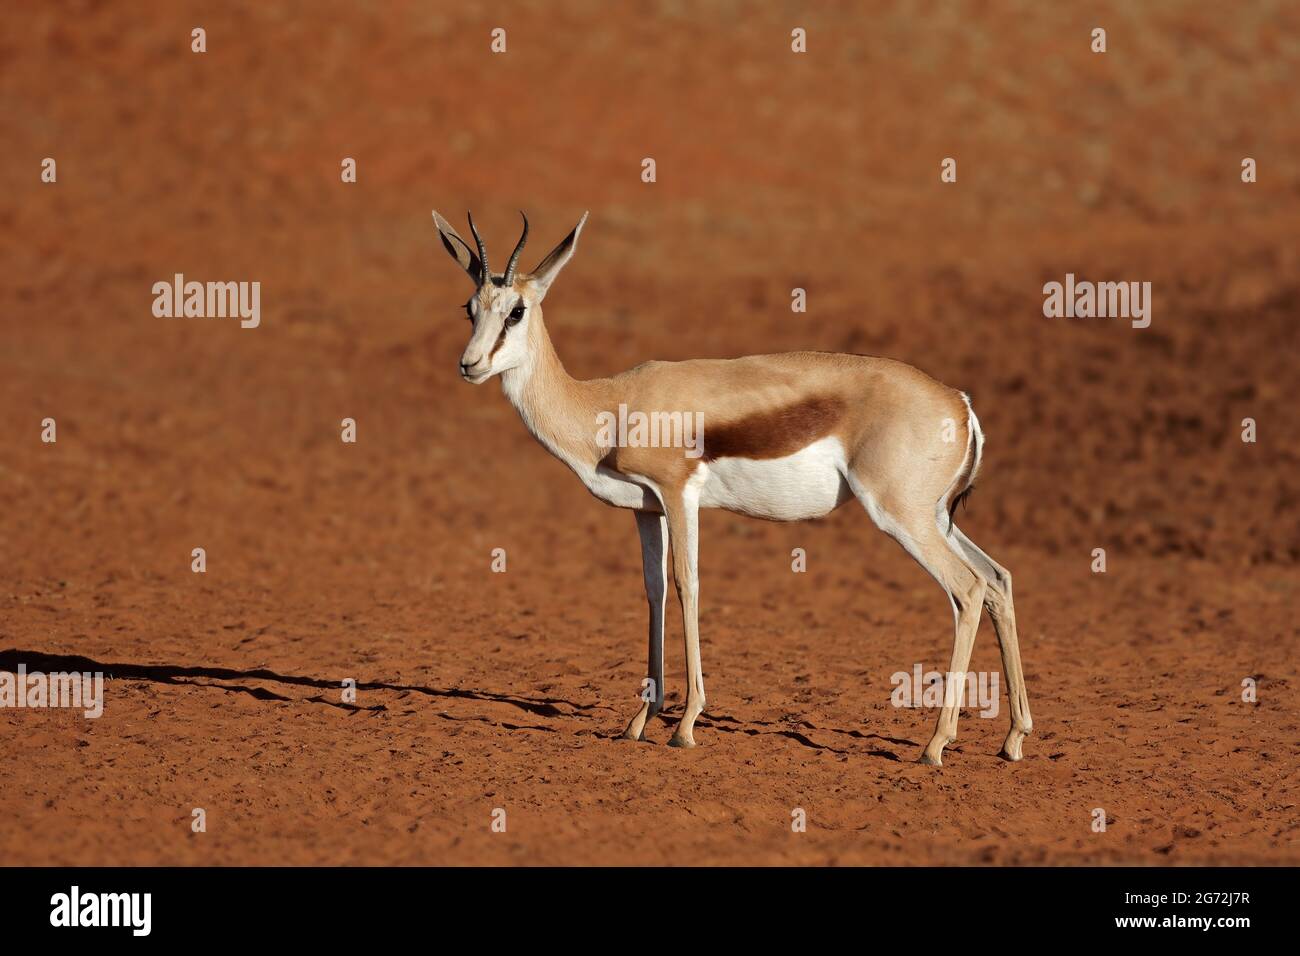 Un antilope springbok (Antidorcas marsupialis) in habitat desertico, Sudafrica Foto Stock